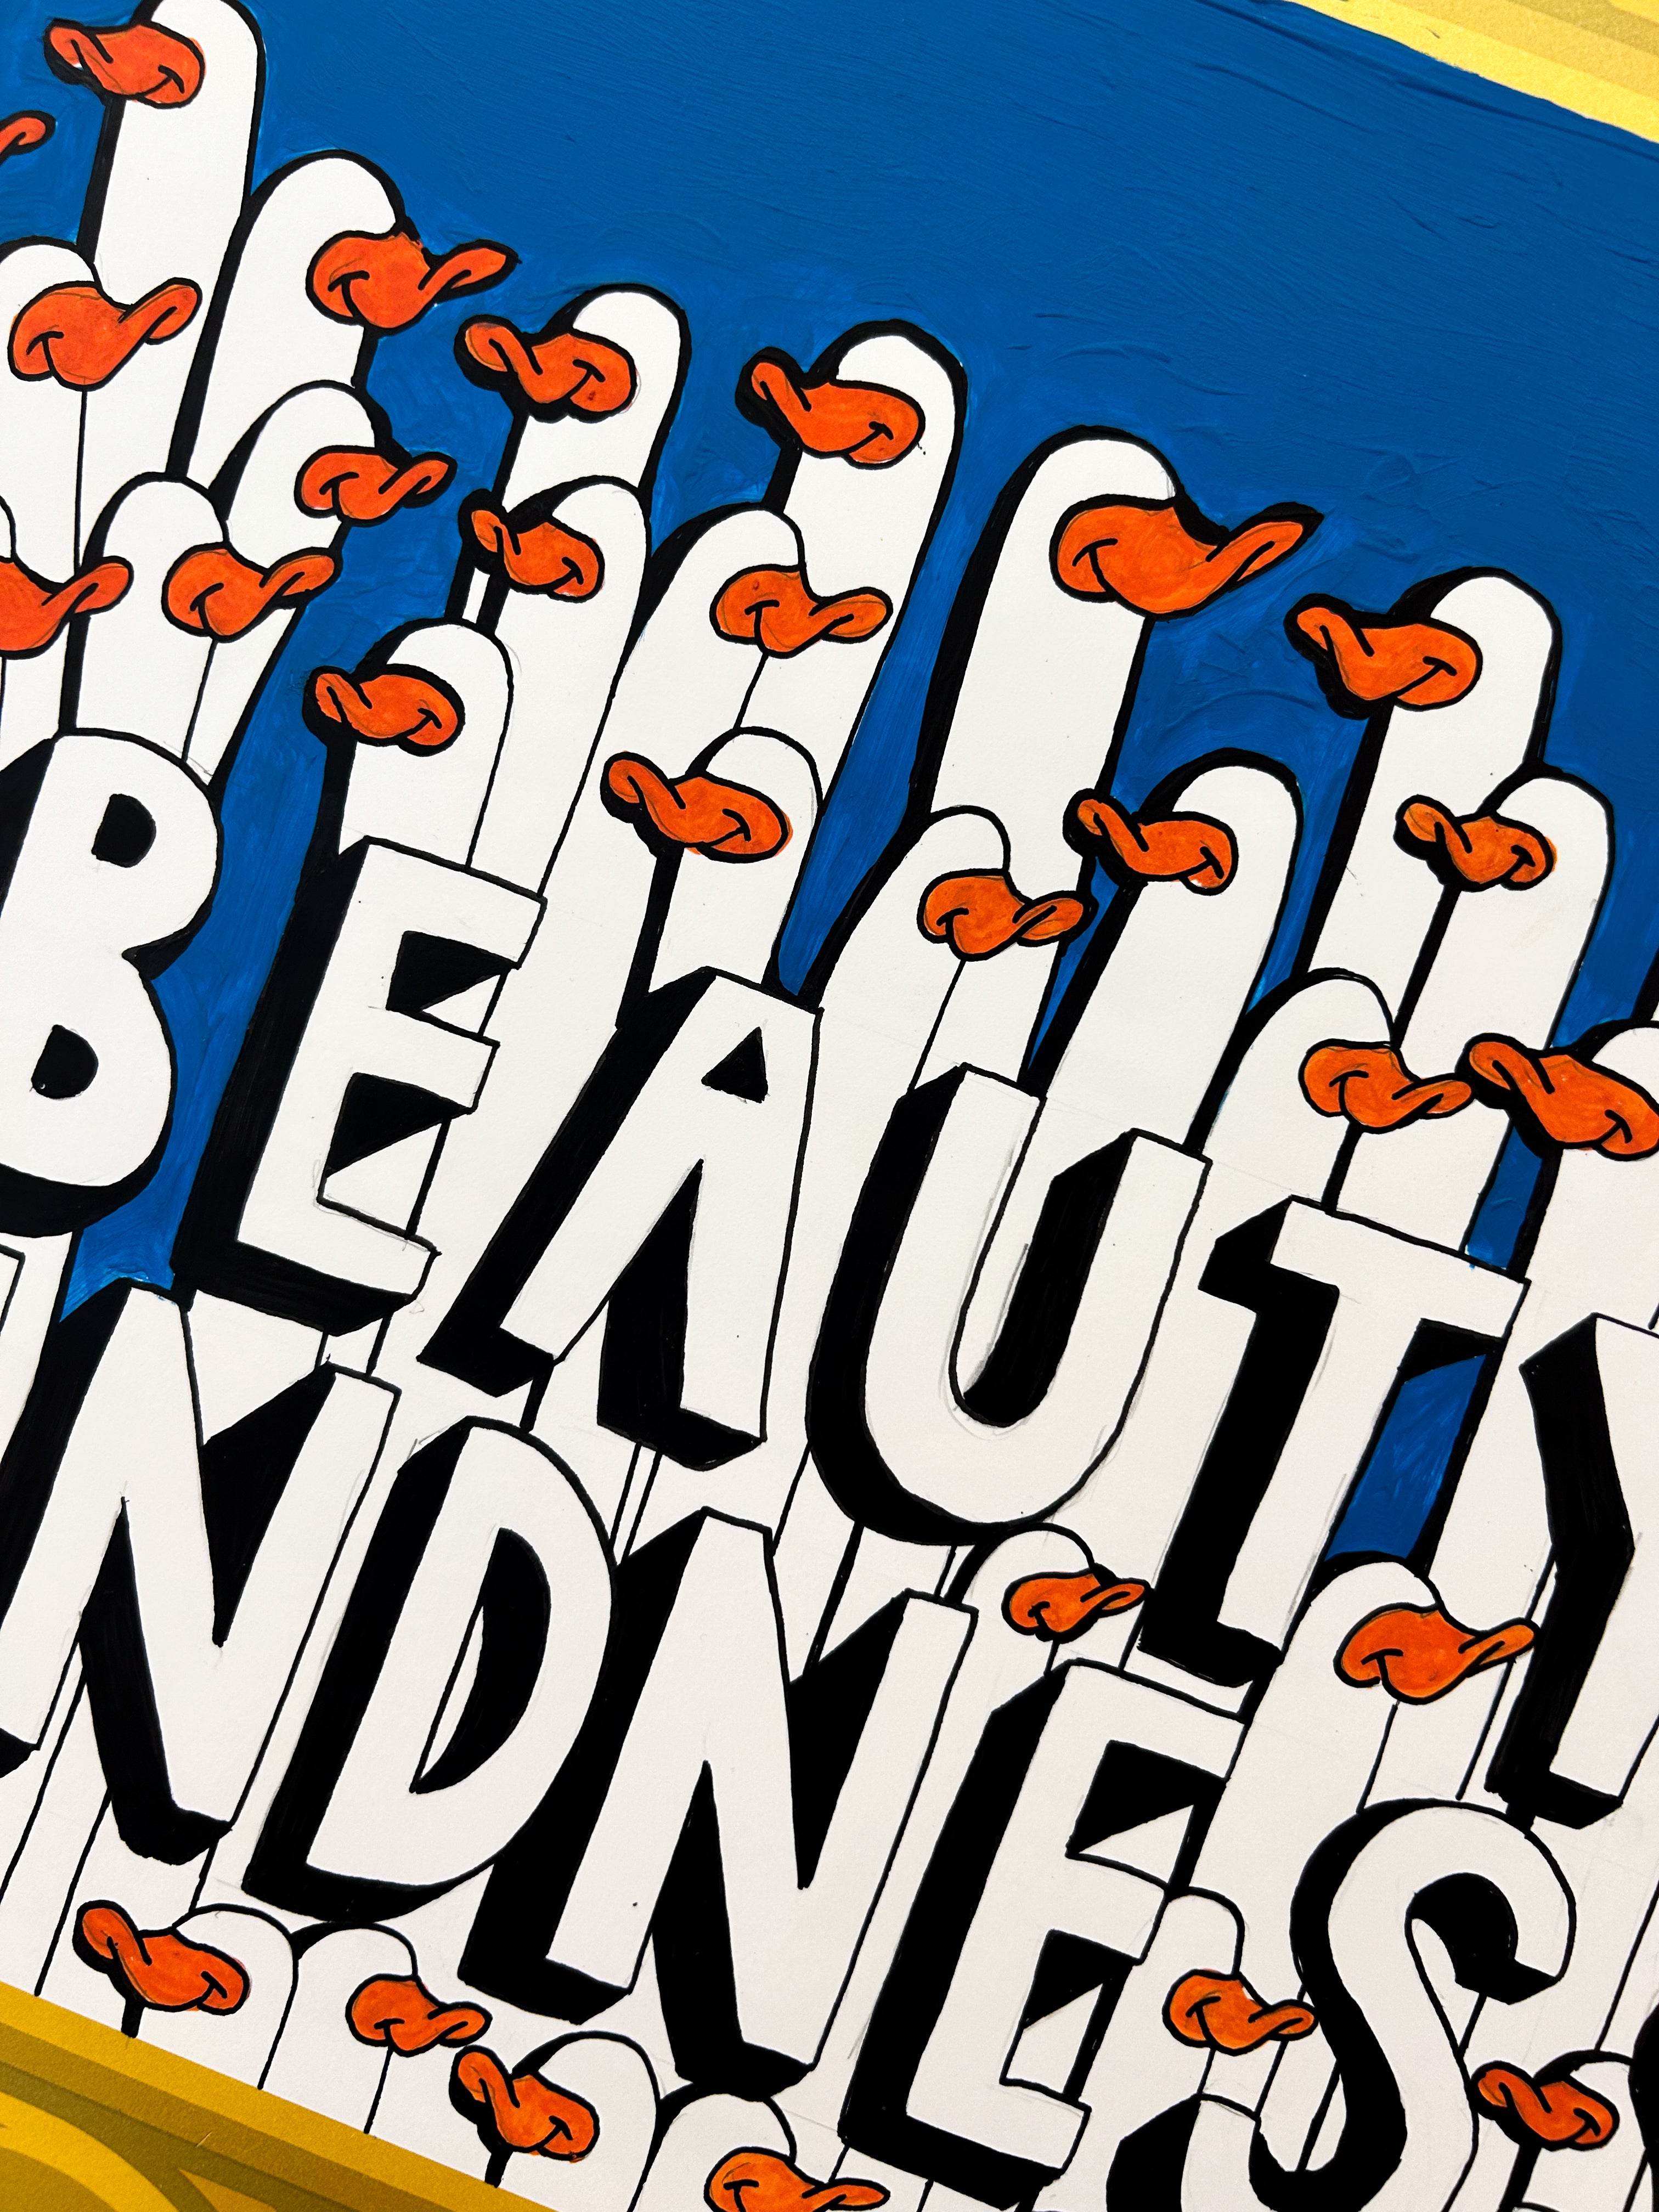 "Beauty is Kindness” by Goosenek